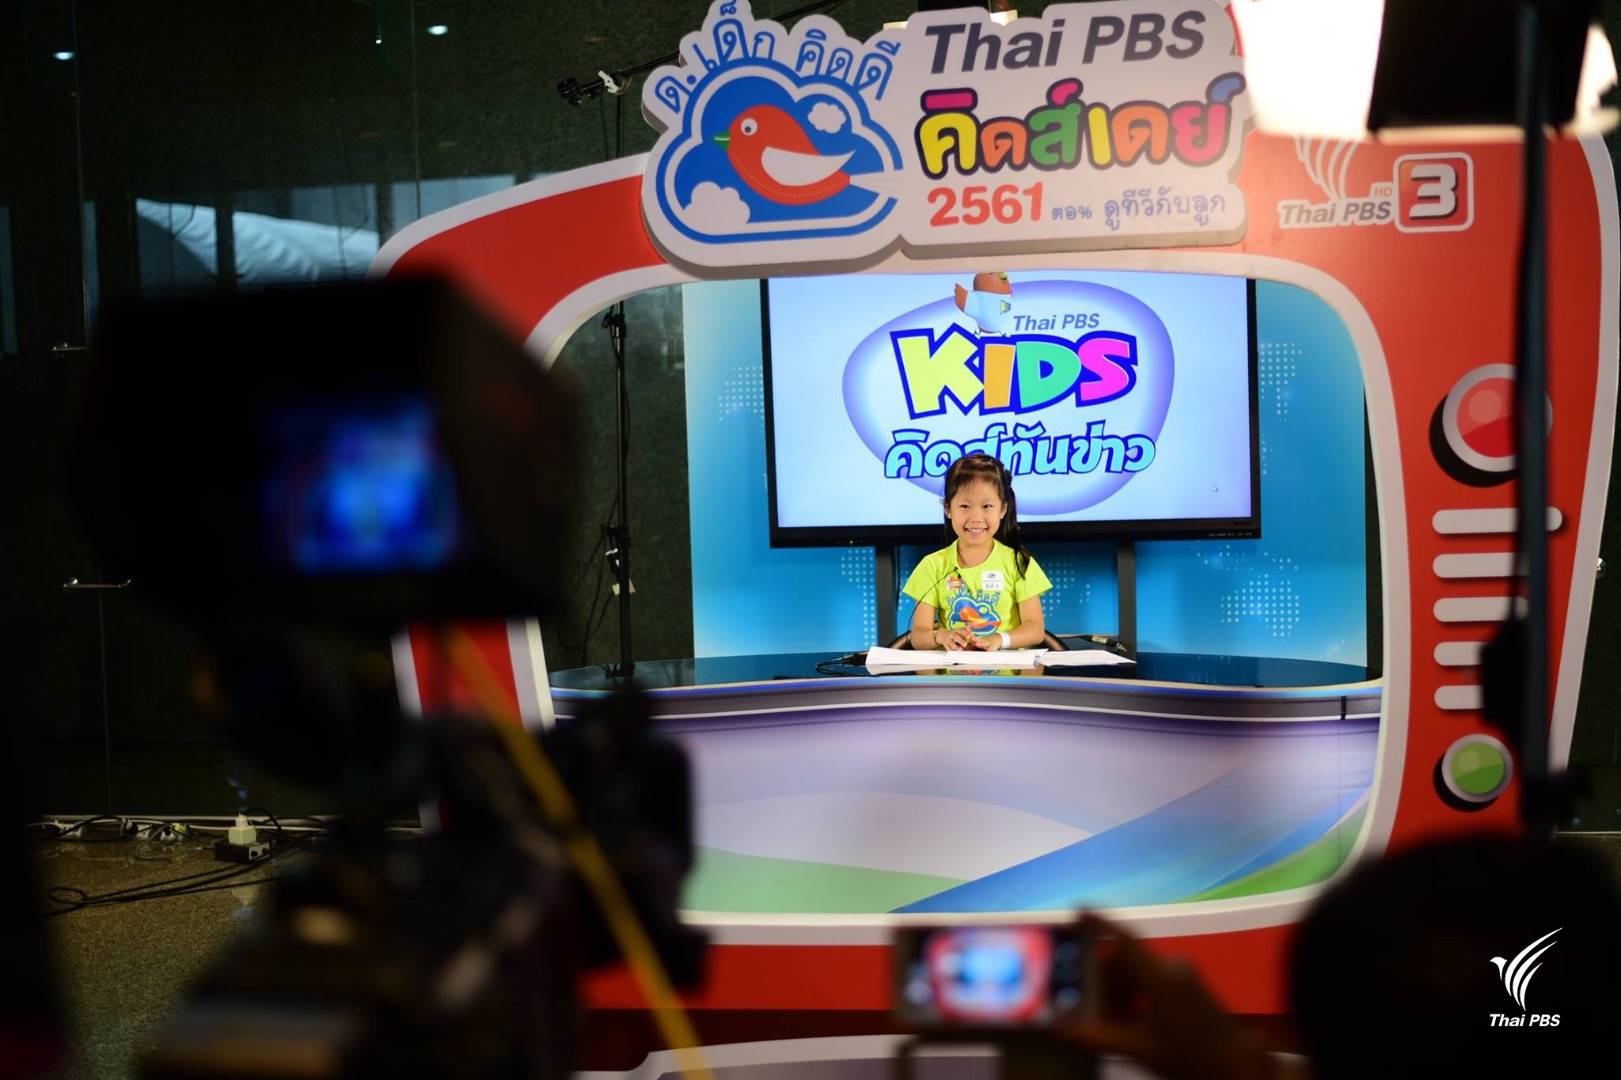 ผู้ประกาศข่าวรุ่นเยาว์ : กิจกรรมวันเด็กที่ไทยพีบีเอส